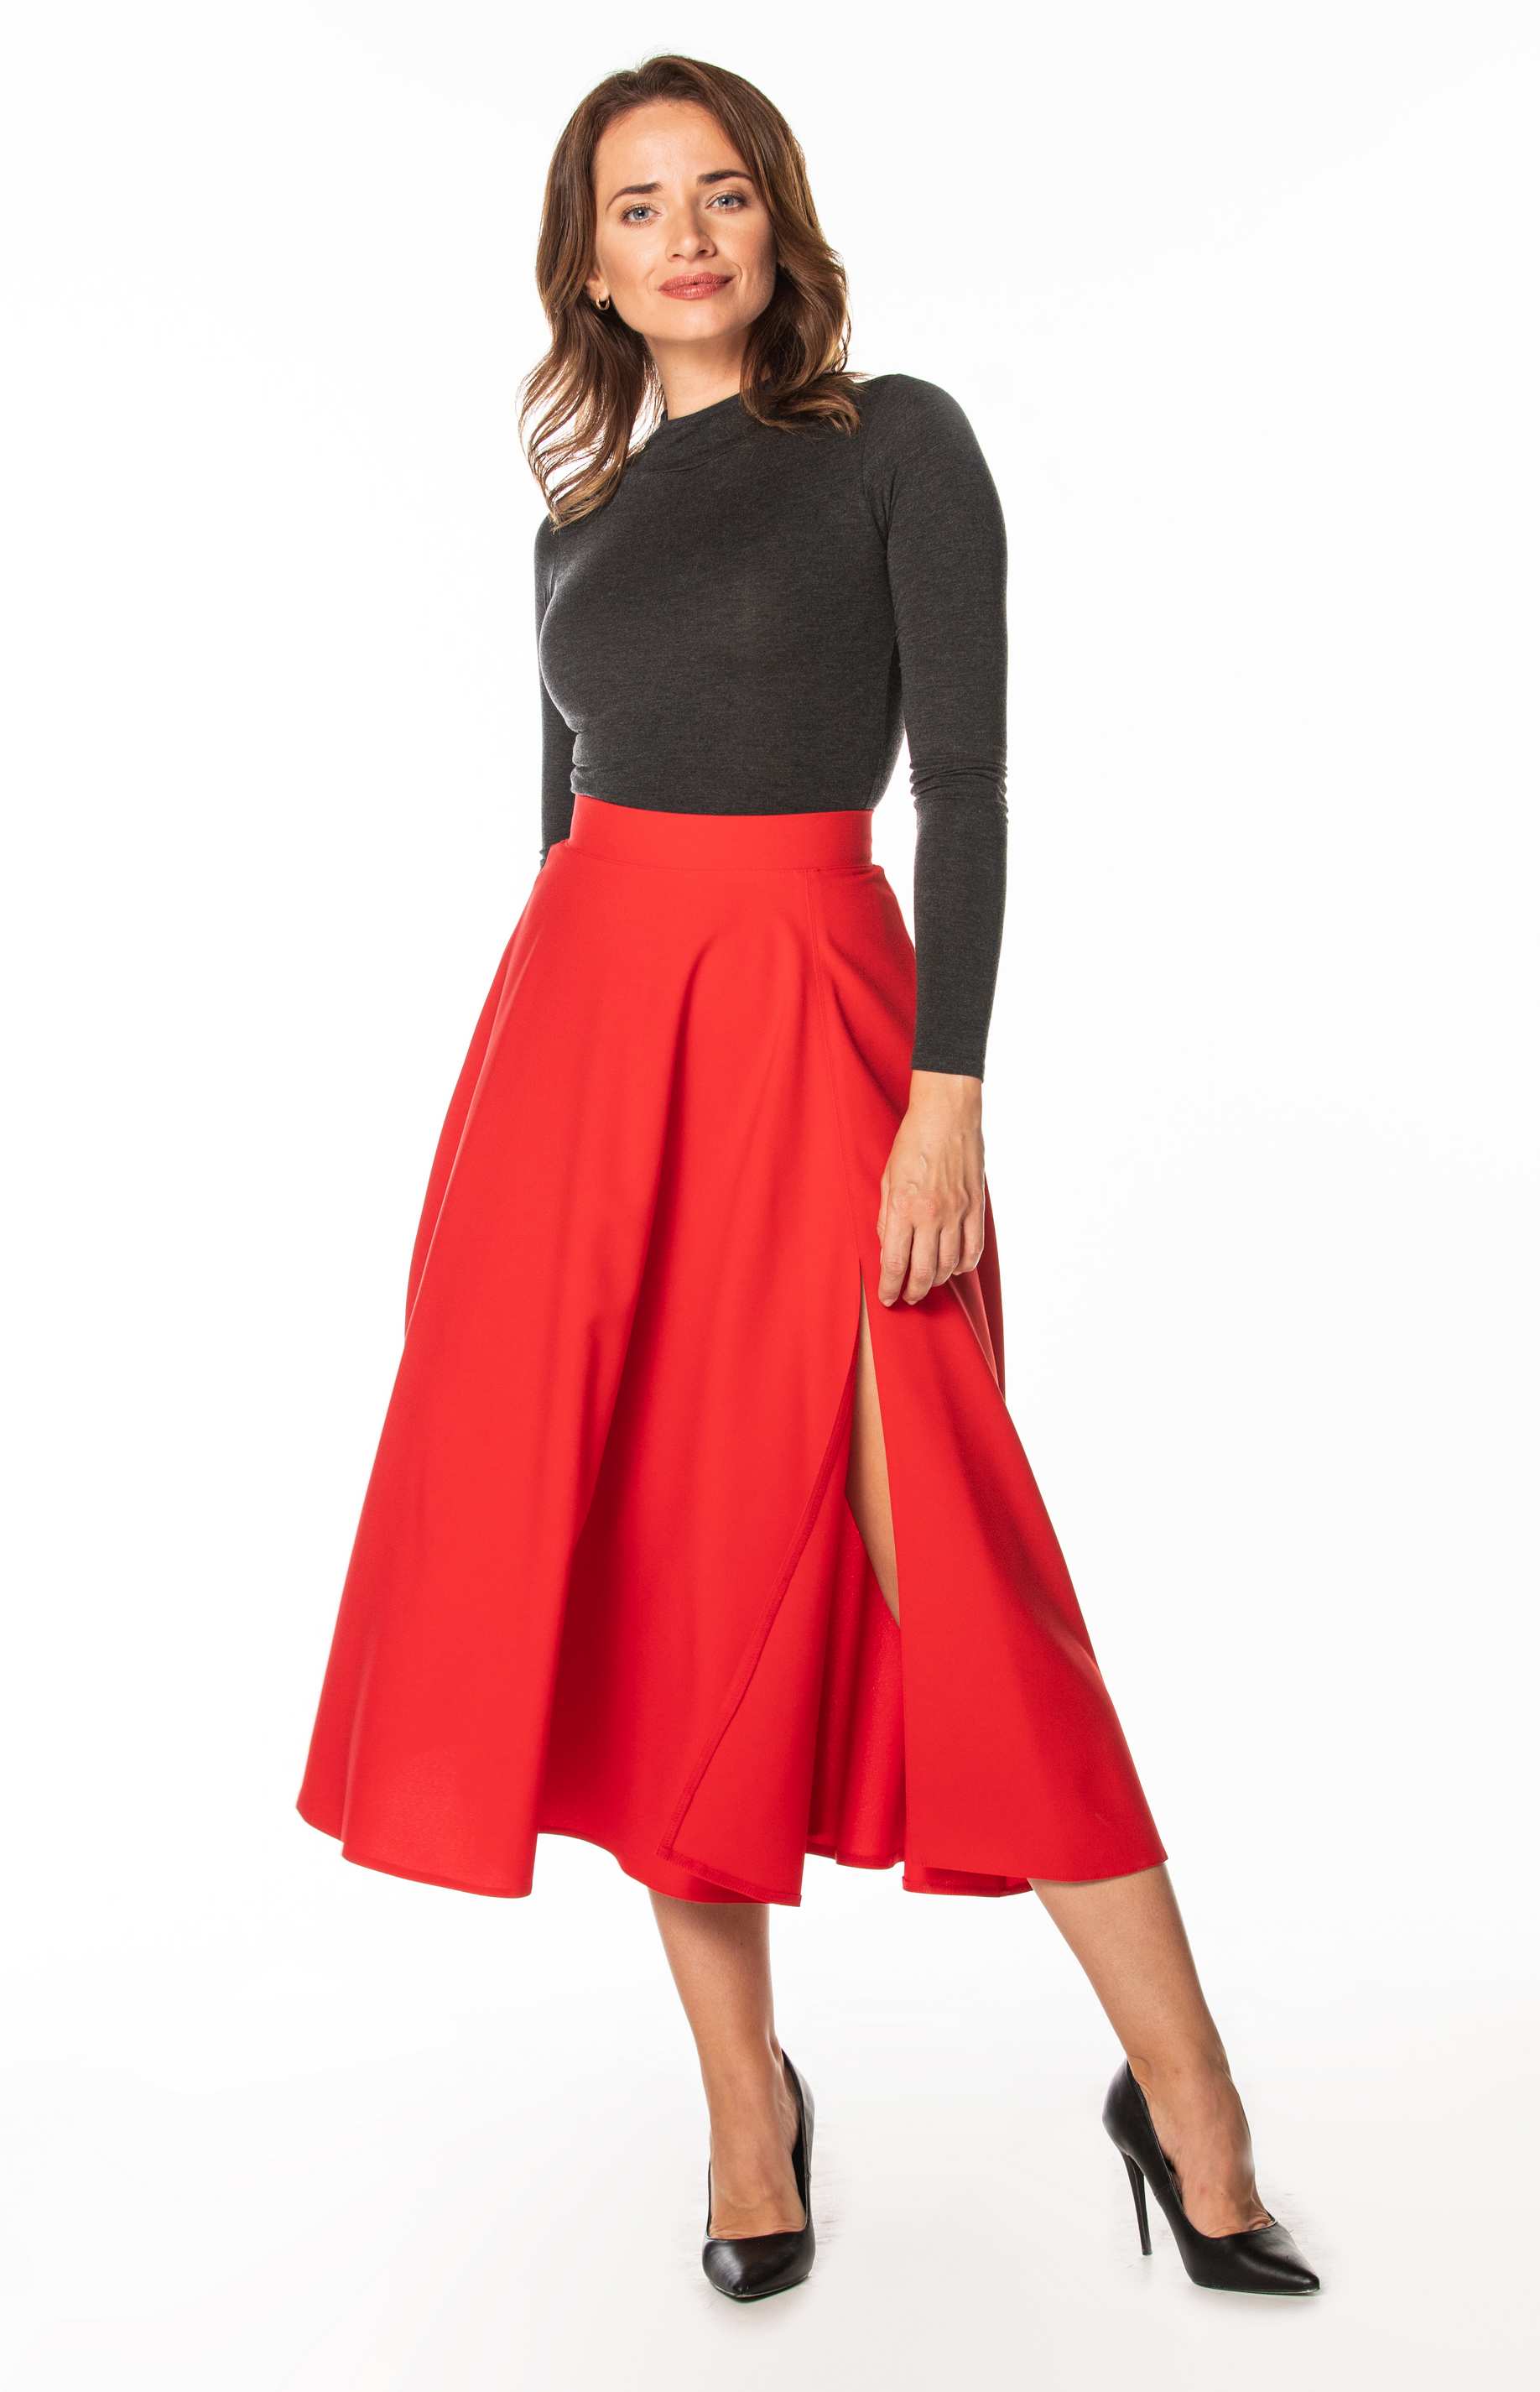 jupe longue rouge simple chic - Ref ju009 - Jupe femme longue